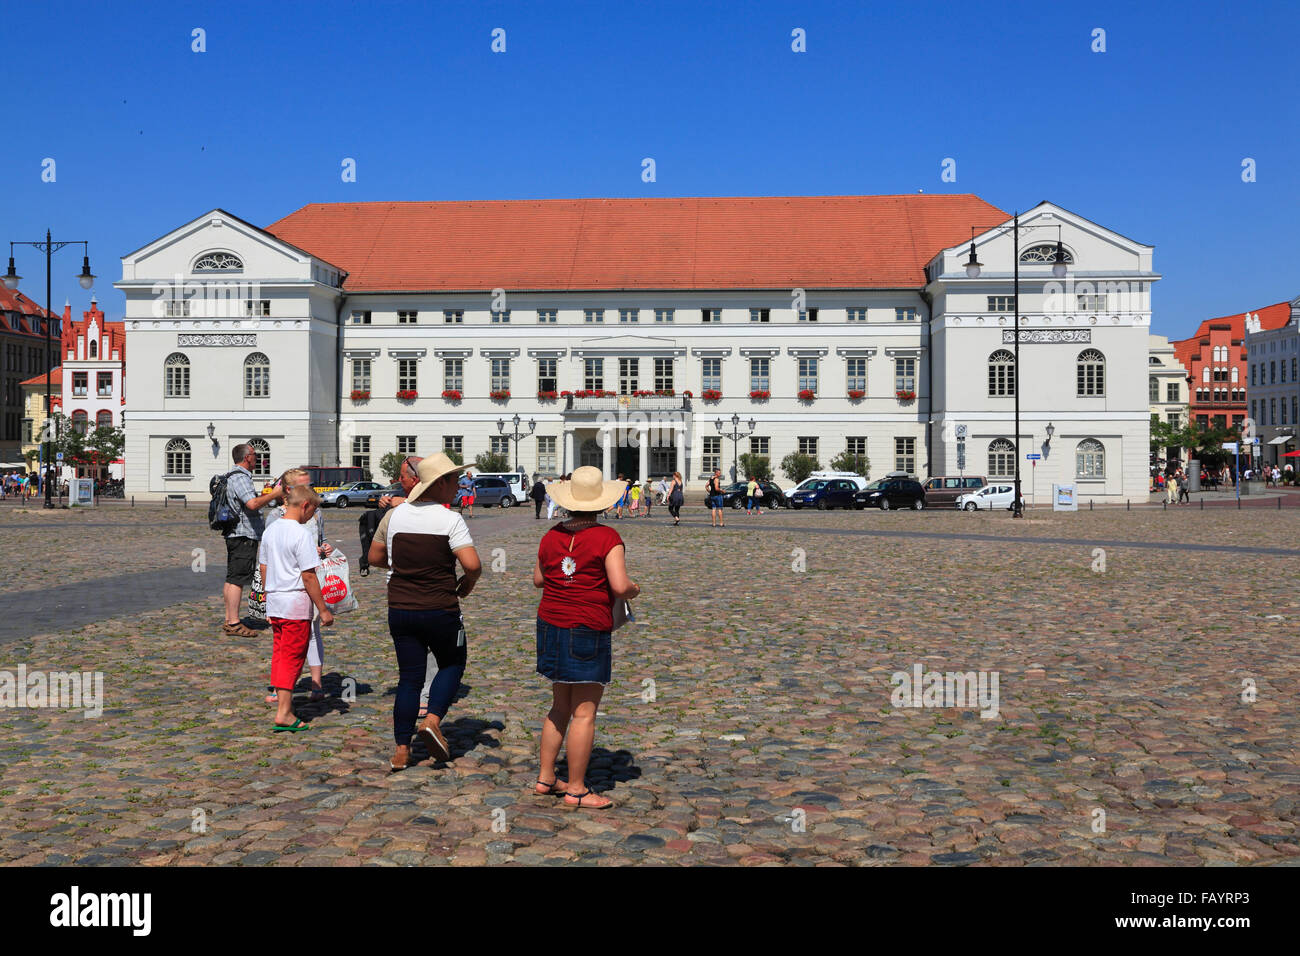 Rathaus am Markt Platz, Wismar, Ostsee, Mecklenburg Western Pomerania, Deutschland, Europa Stockfoto